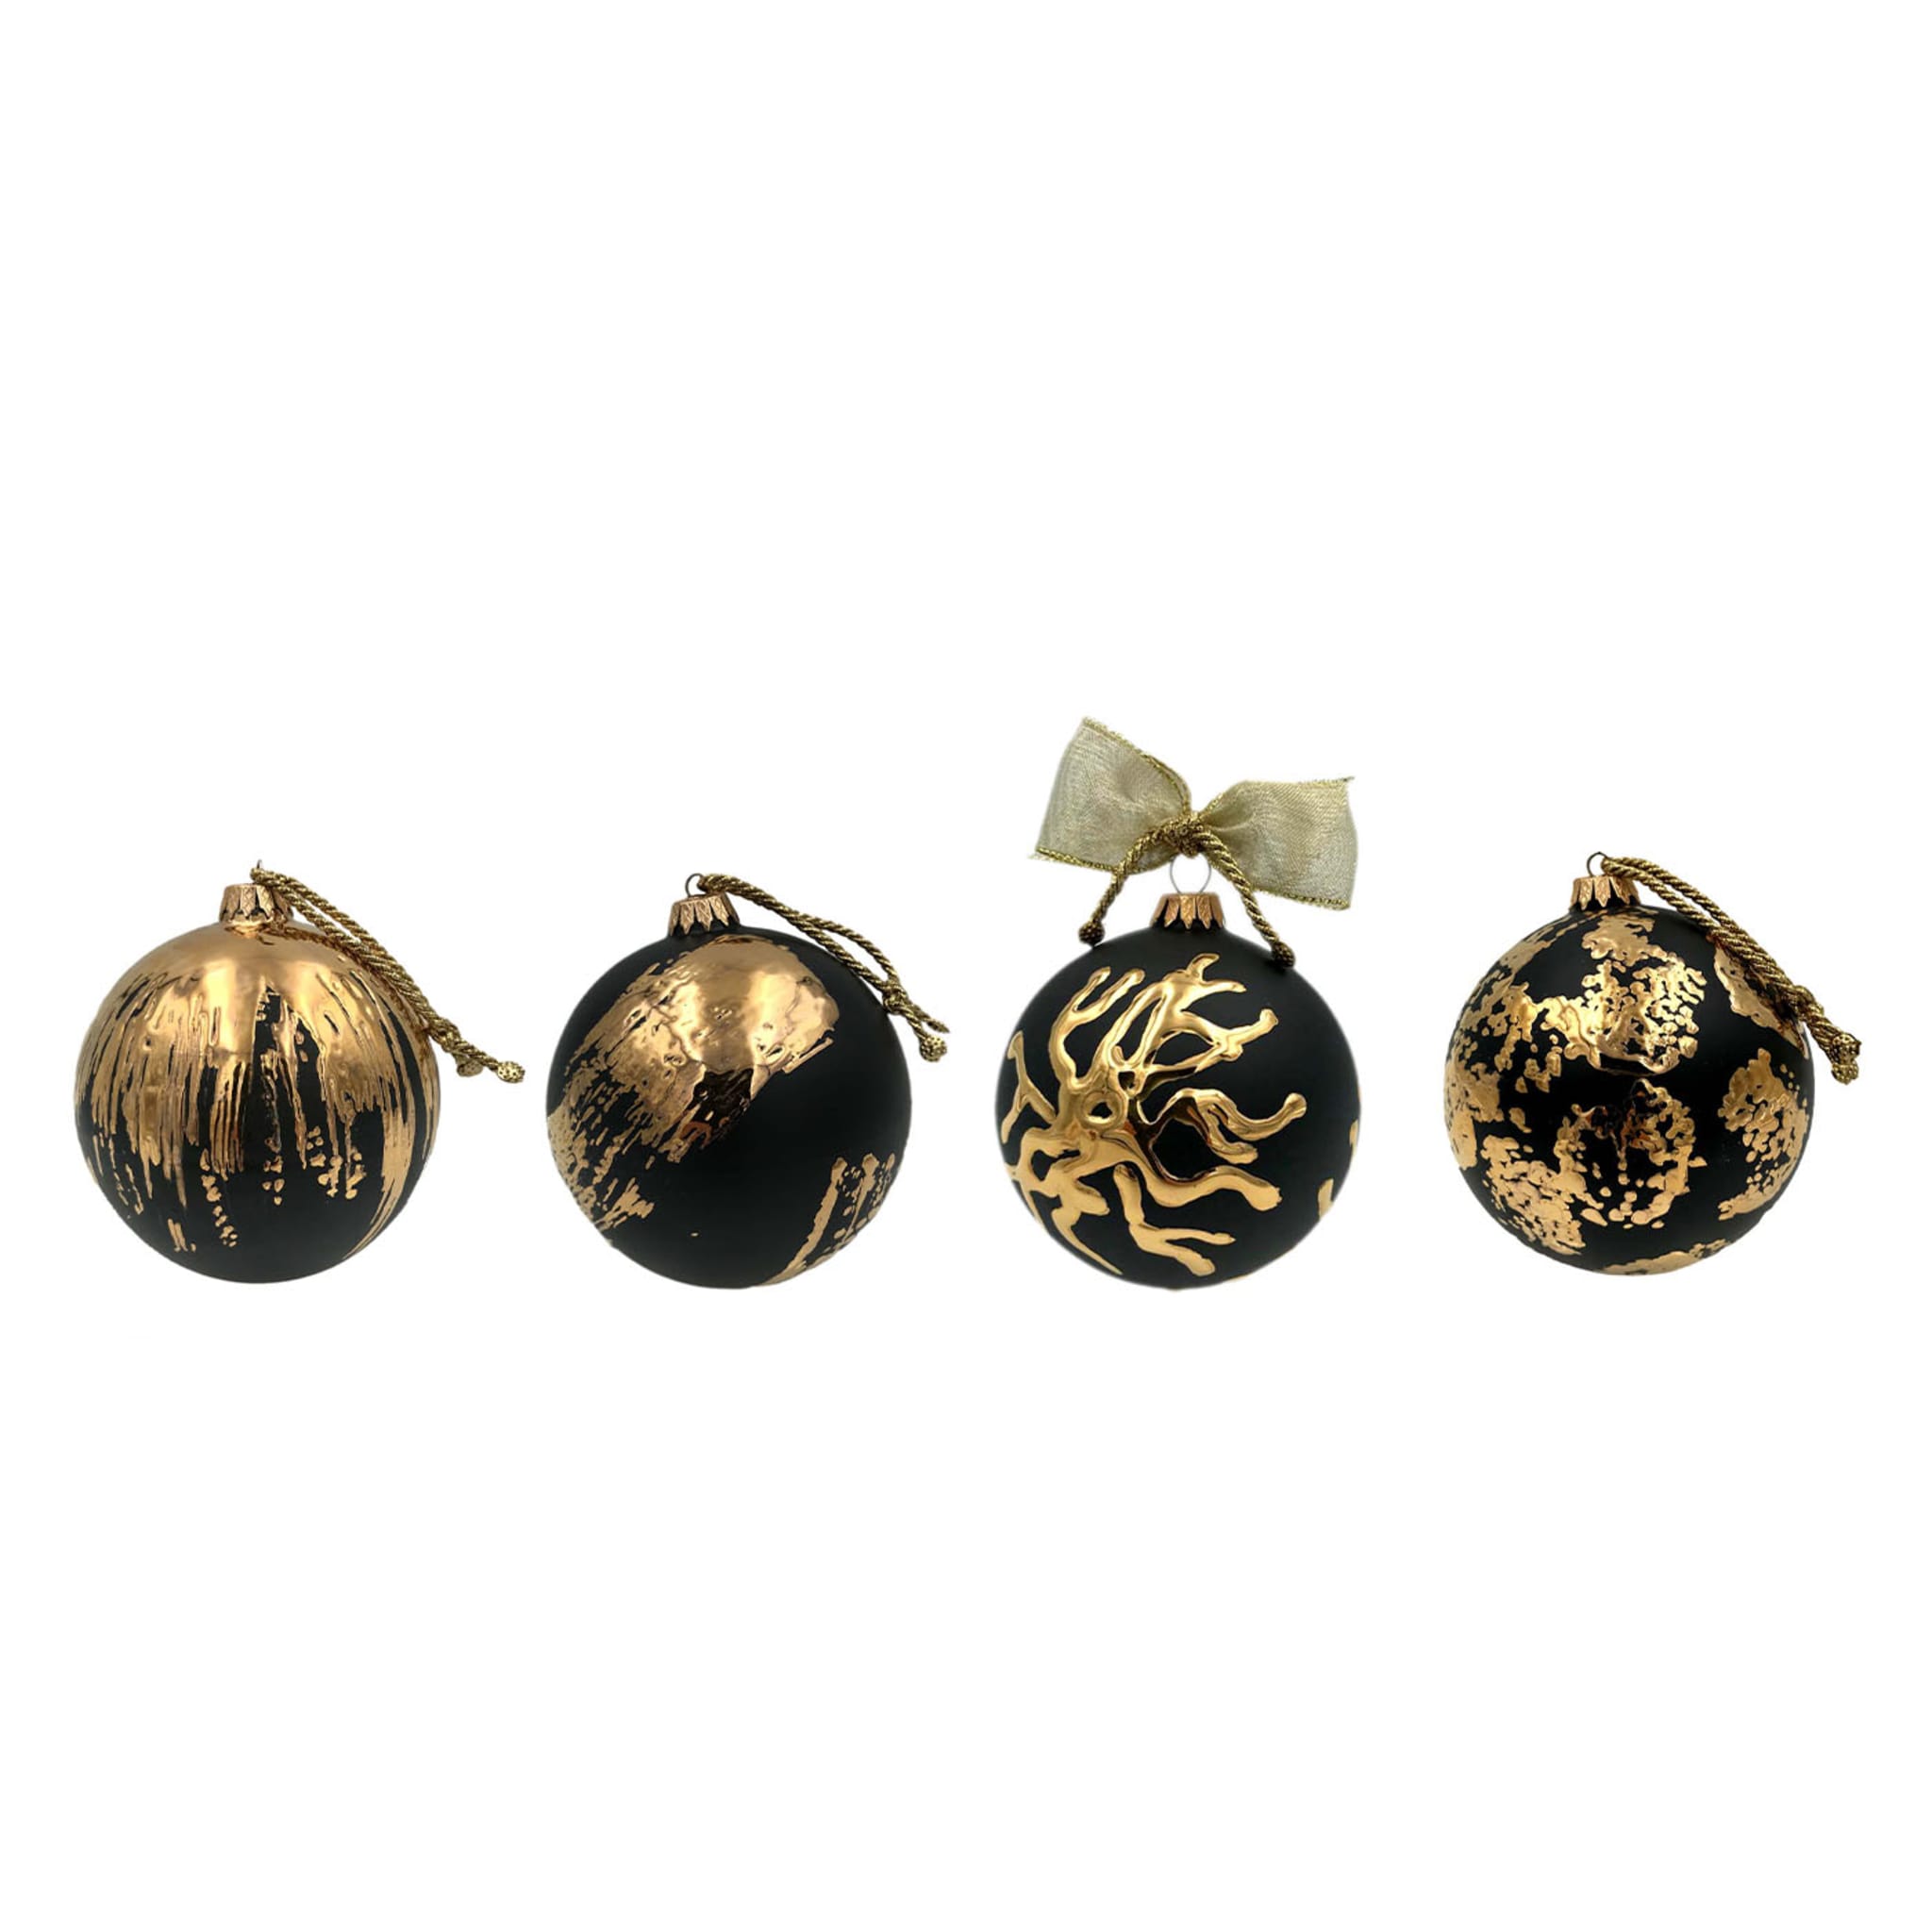 Corallo Ceramic Christmas Ornament Black and Gold - Alternative view 1